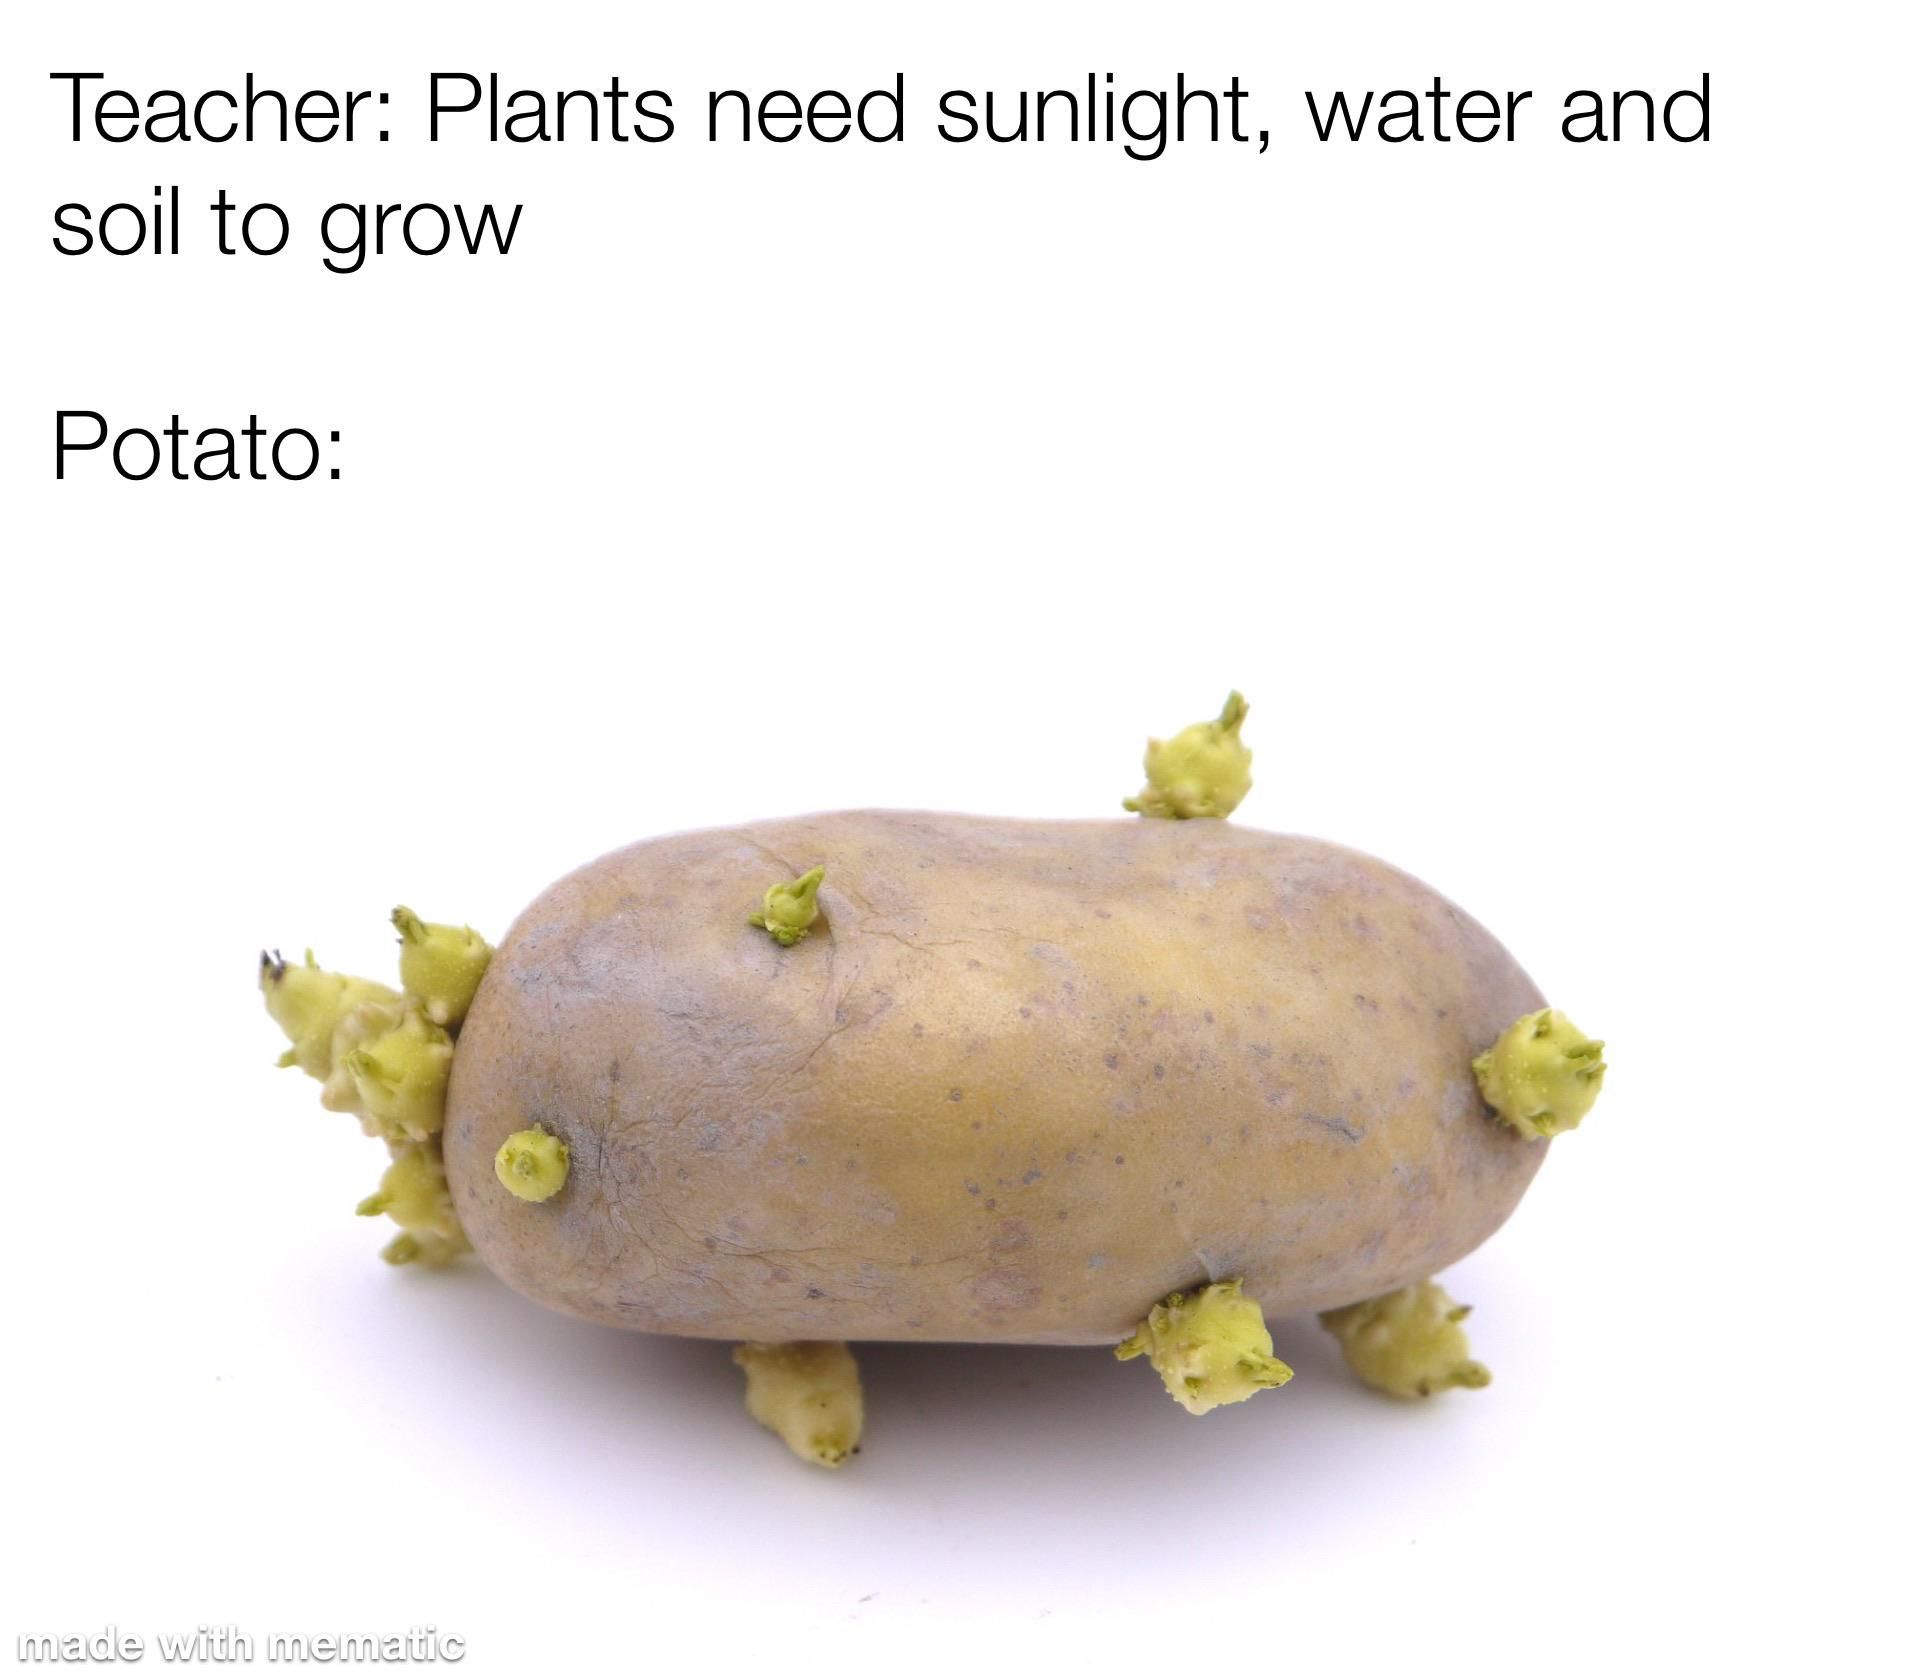 Potato, po-tah-to